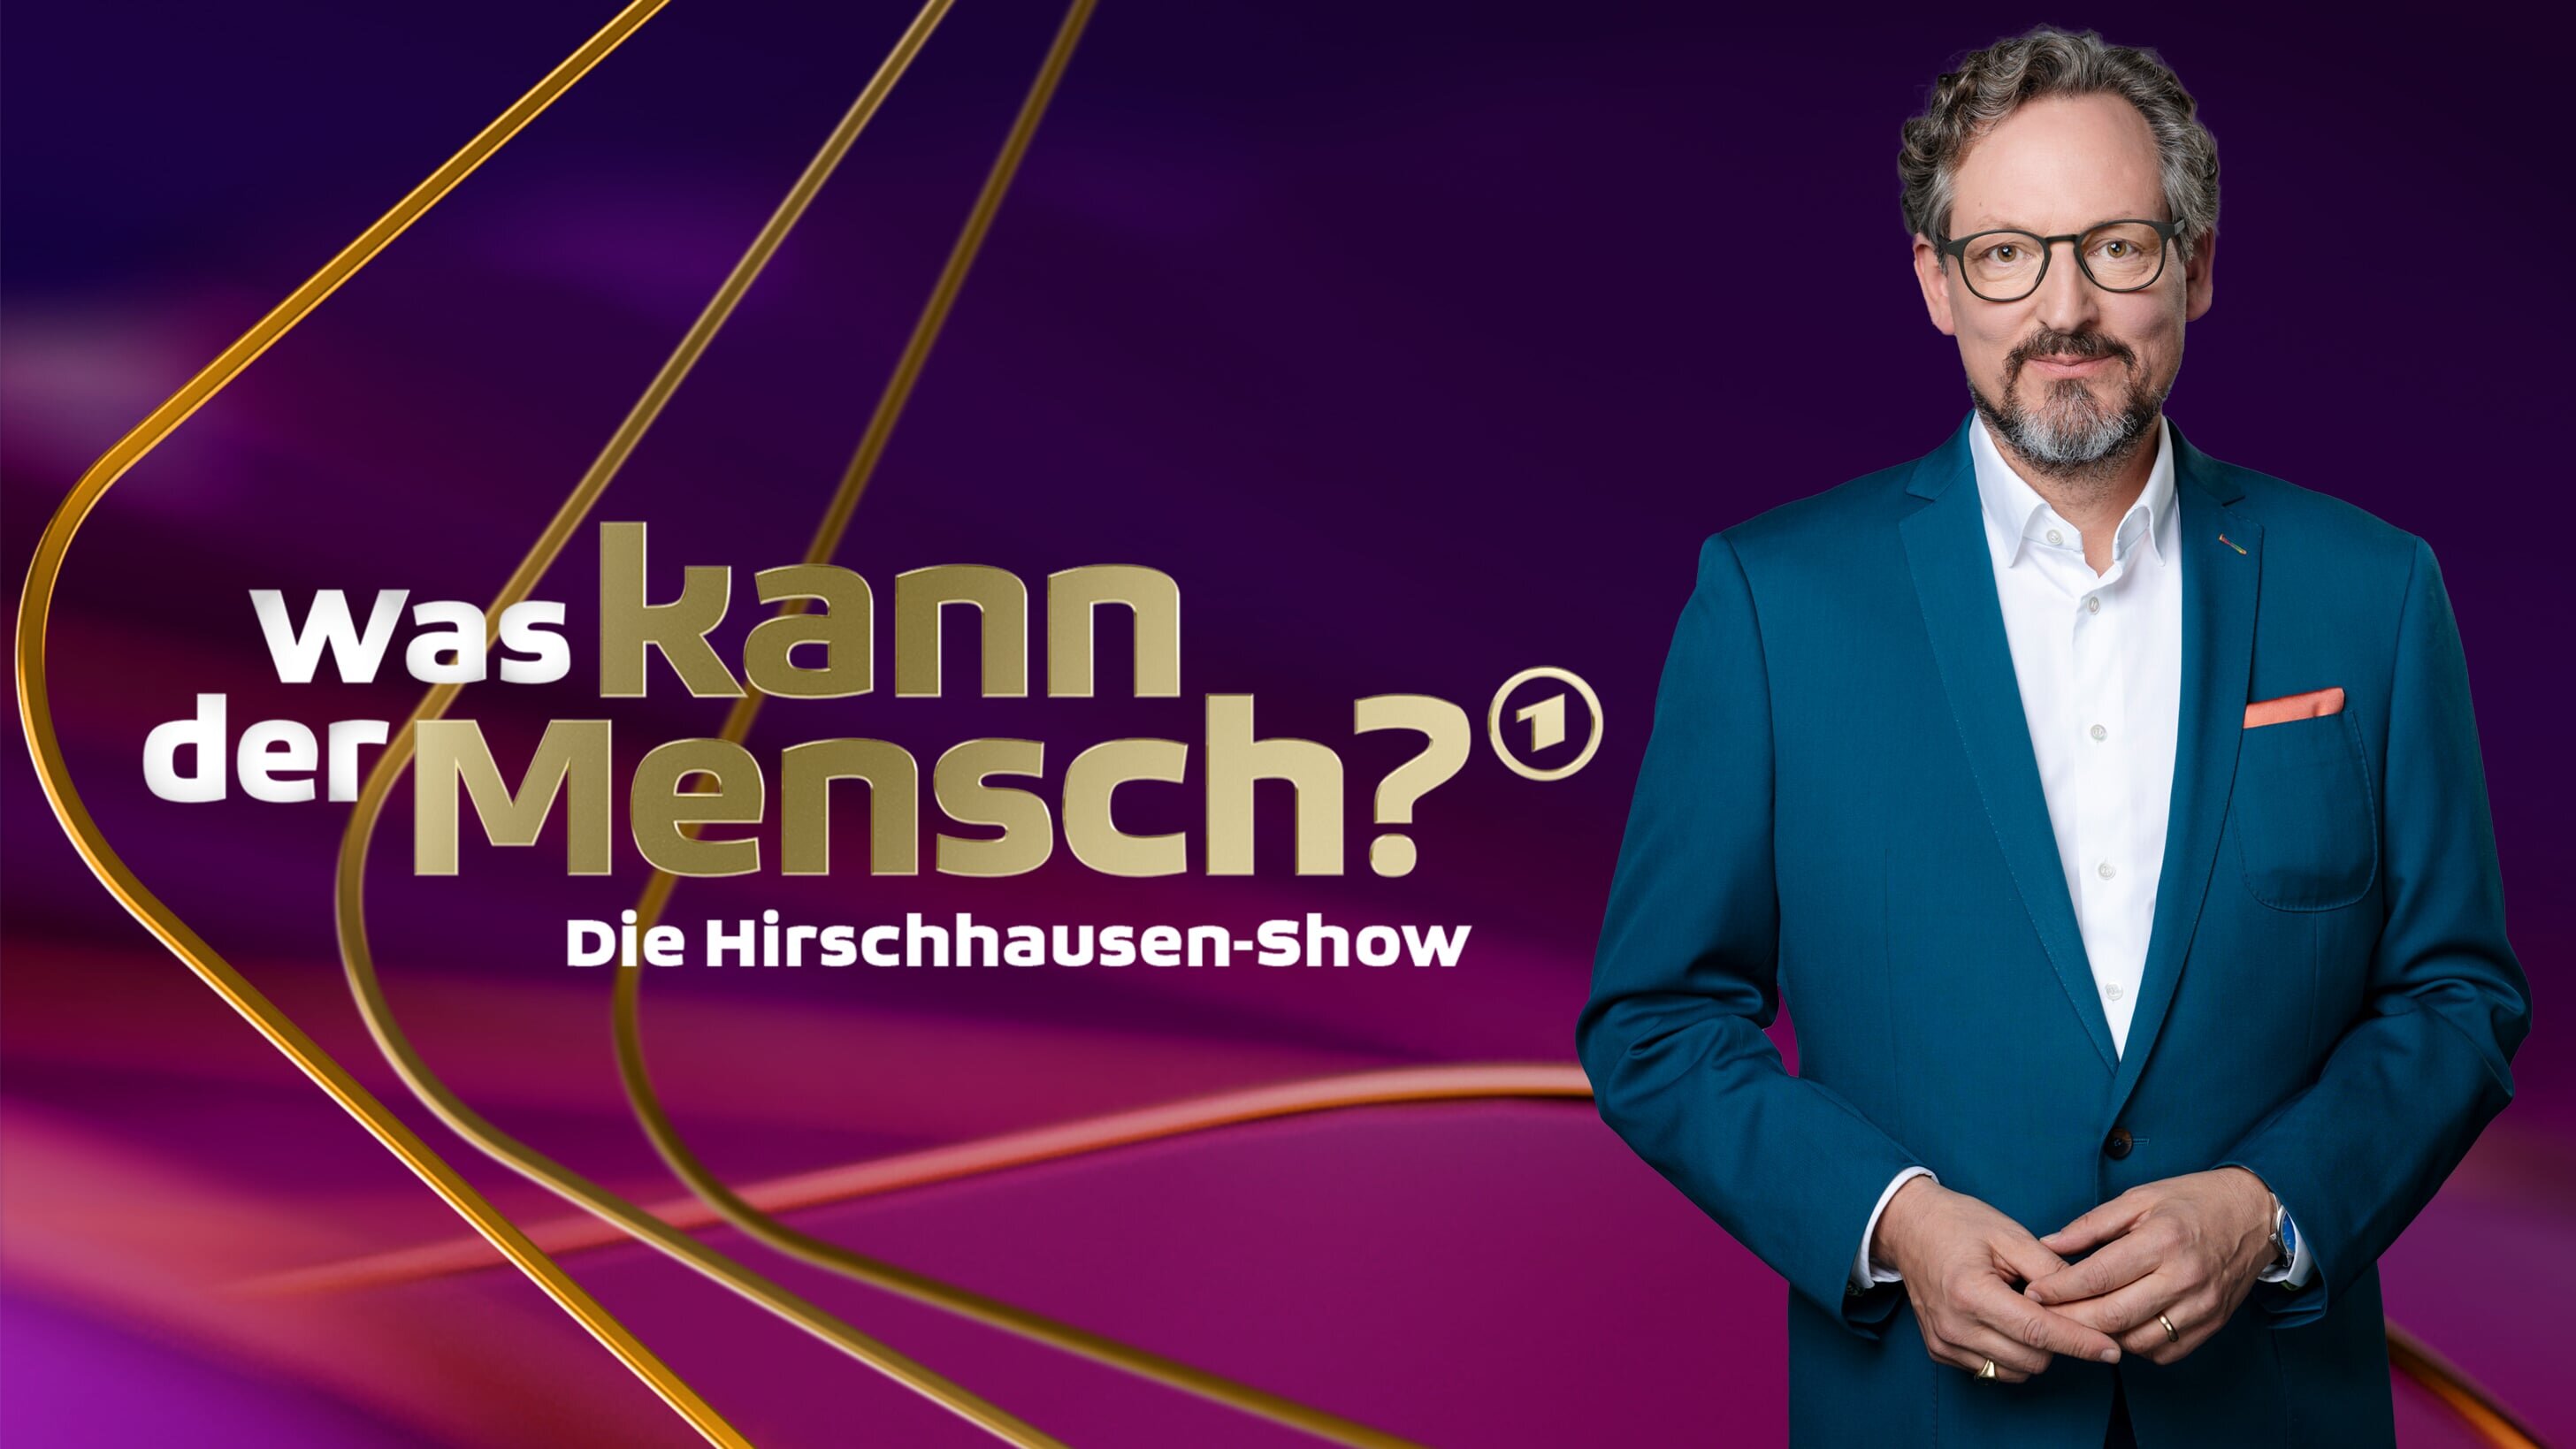 Die Hirschhausen-Show – Was kann der Mensch?